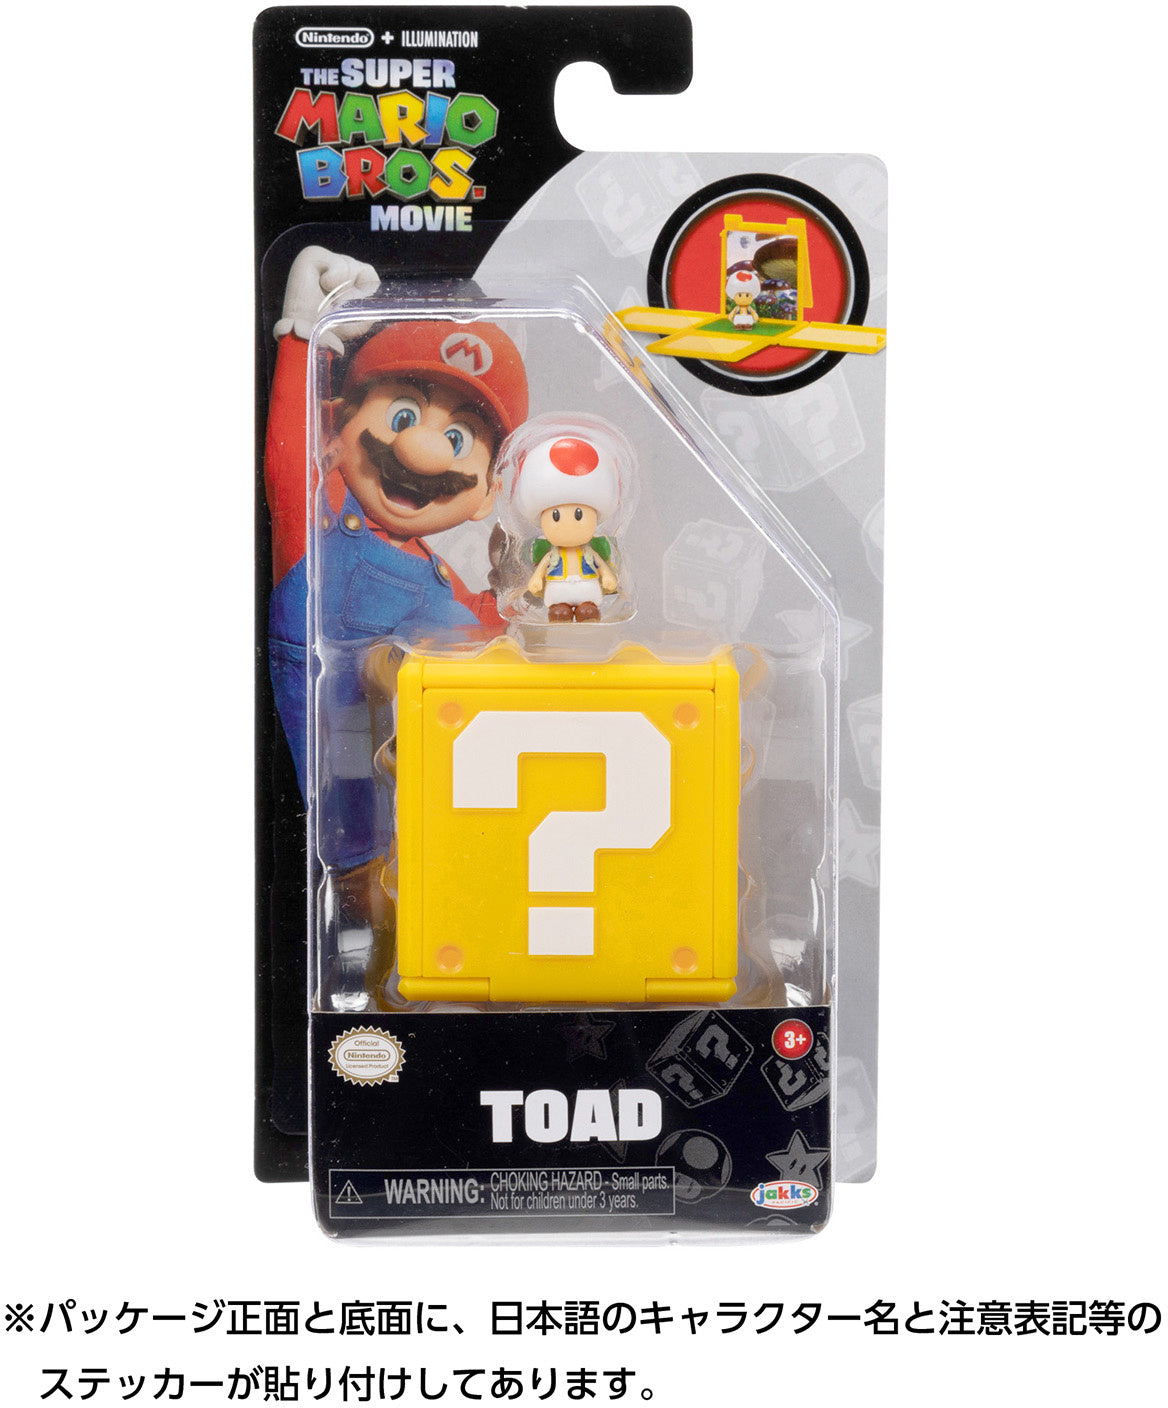 The Super Mario Bros. Movie Mini-Figures- TOAD